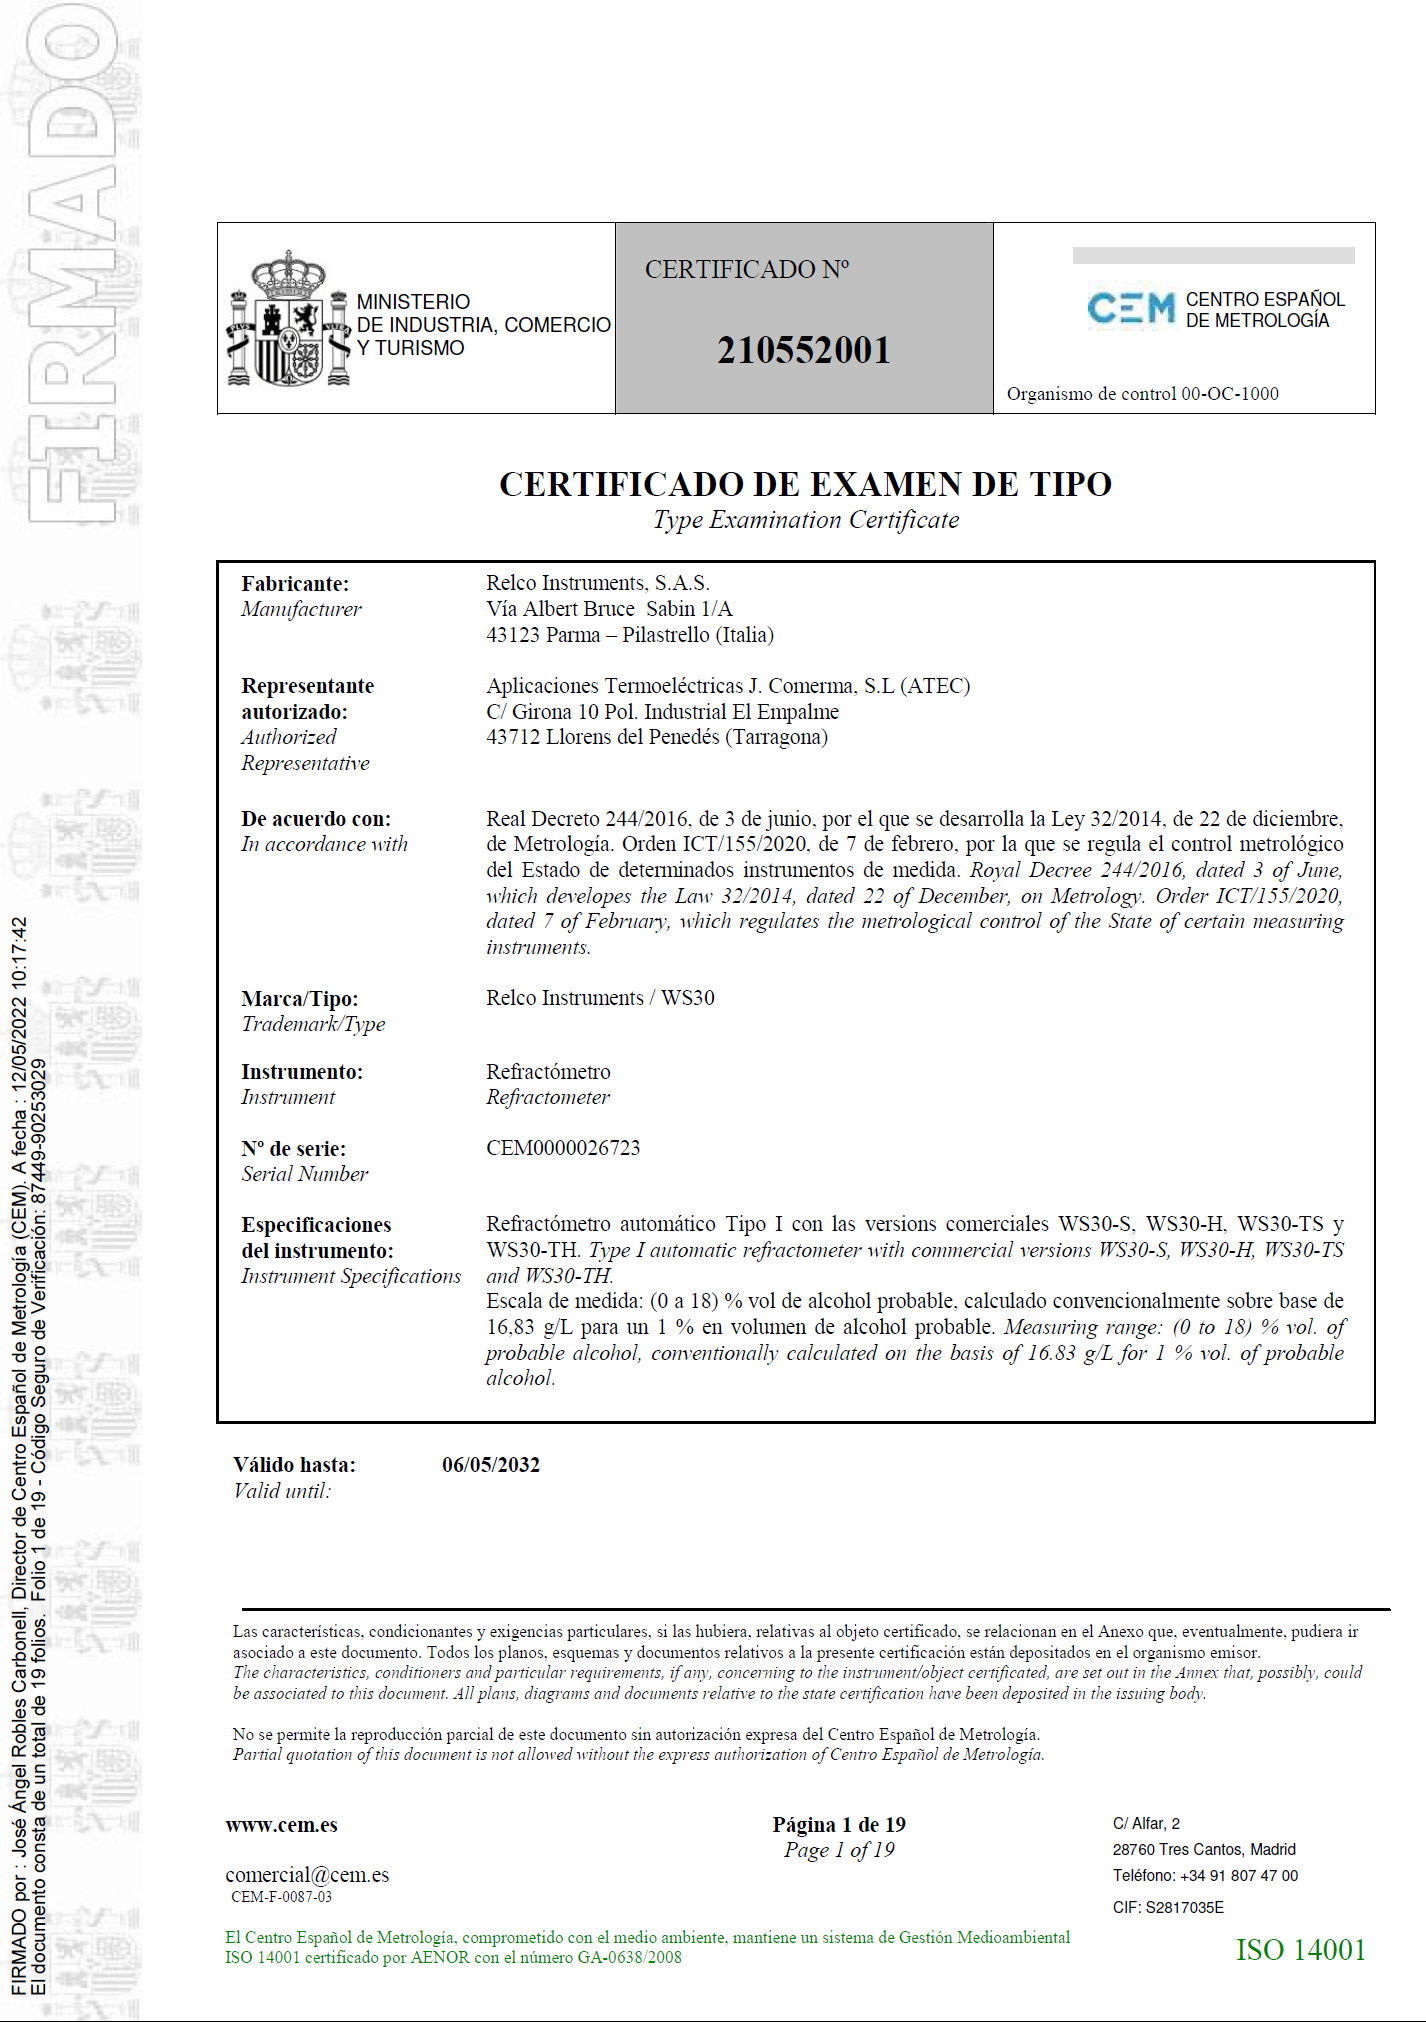 Certificado de examen de tipo nº 210552001